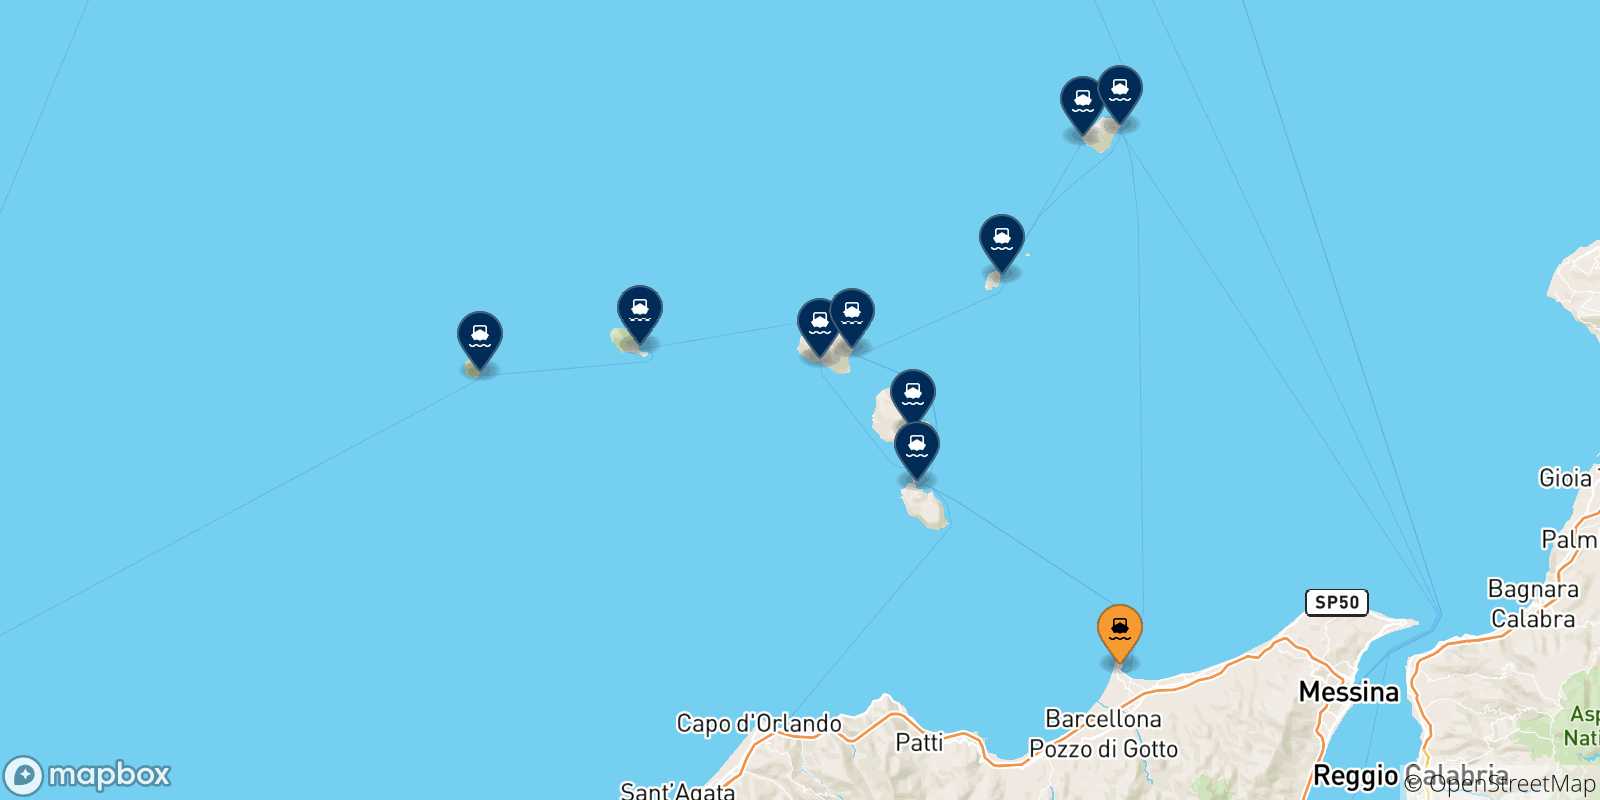 Mappa delle possibili rotte tra la Sicilia e le Isole Eolie